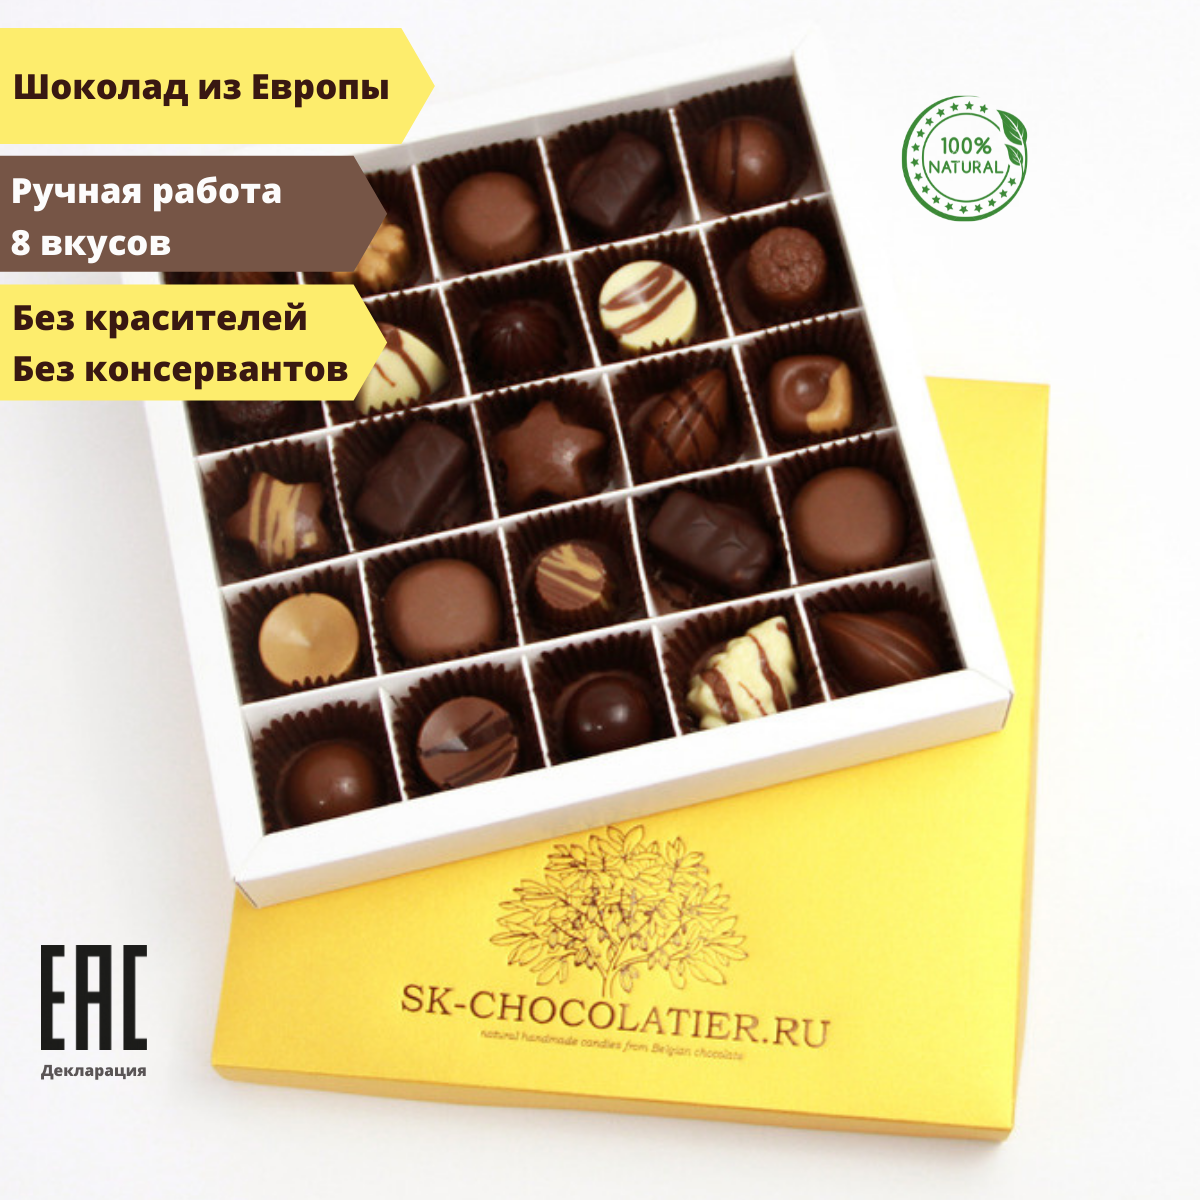 Шоколадные конфеты ручной работы ассорти в подарочной коробке SK-CHOCOLATIER.RU №25 Gold